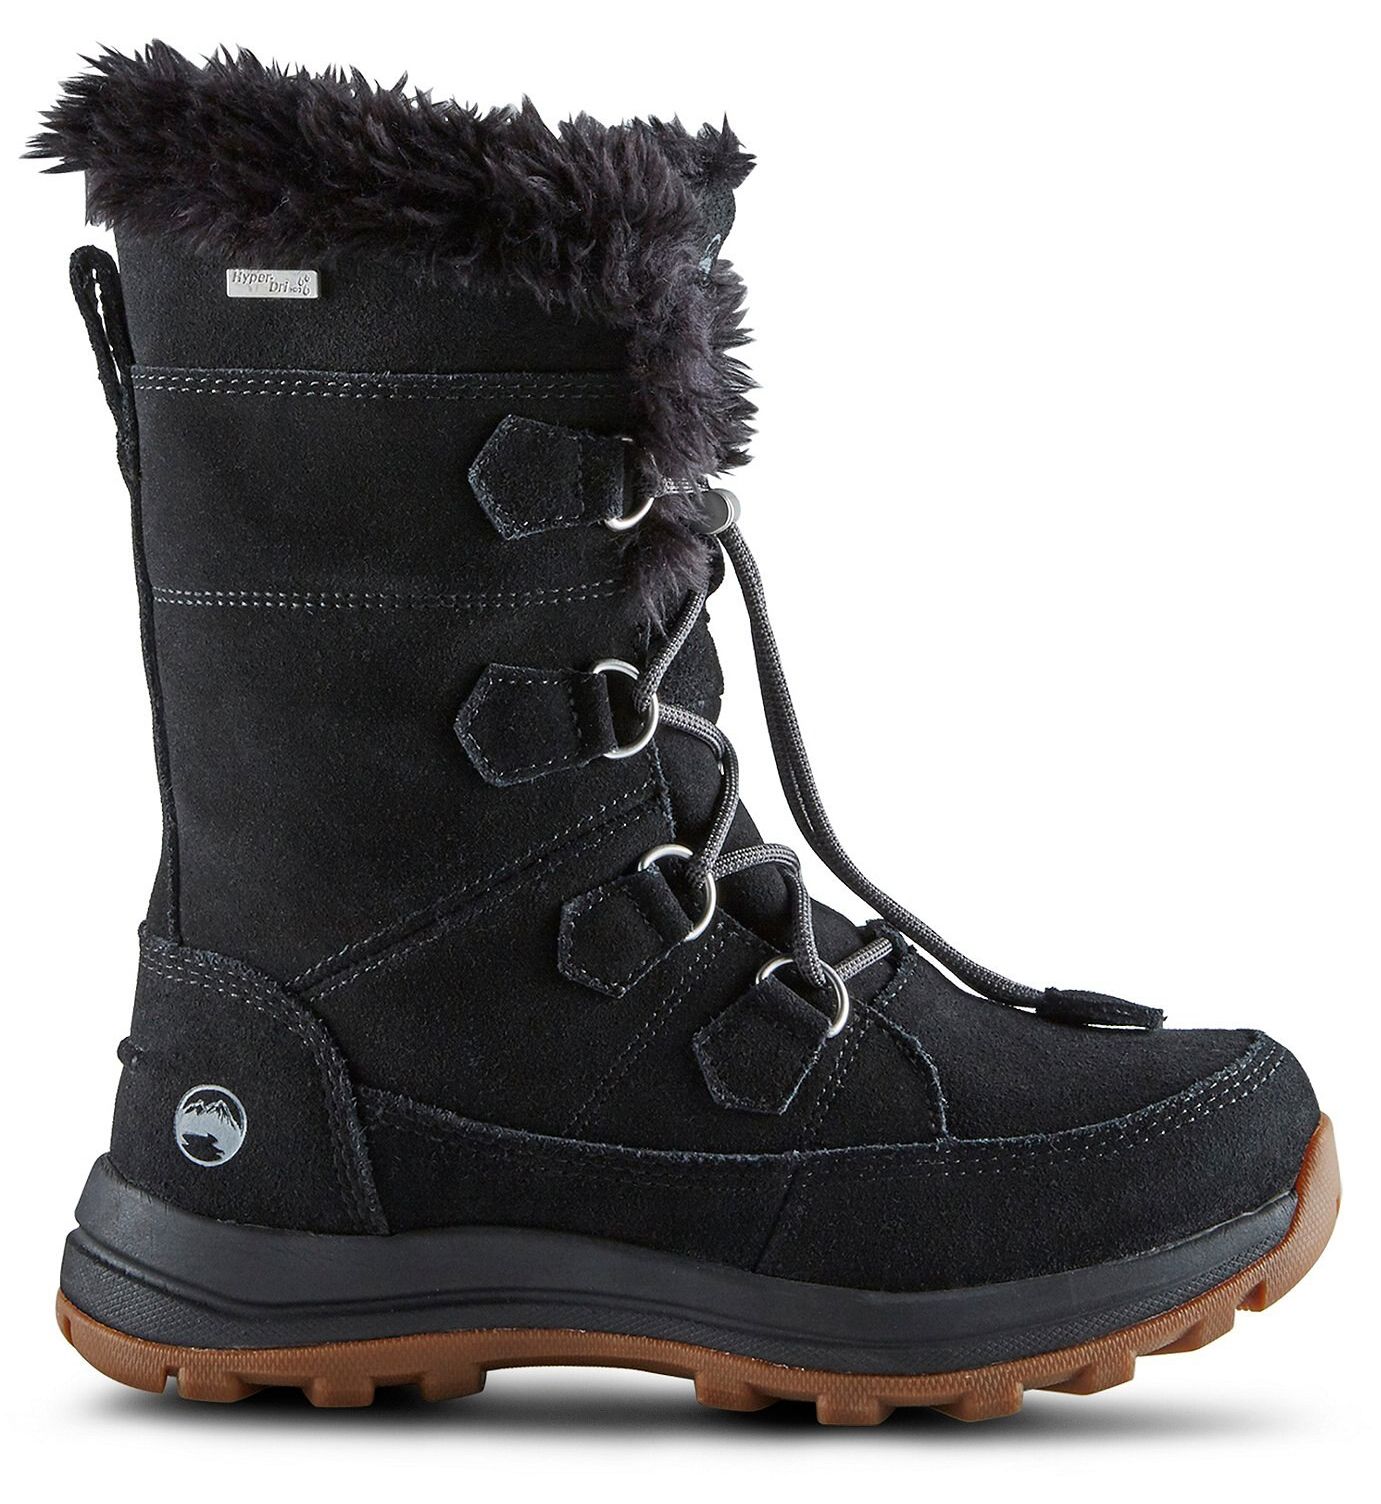 Las mejores botas de nieve y hielo para mujer - Windriver Women’s Ice Queen ICEFX Mid Winter Boots